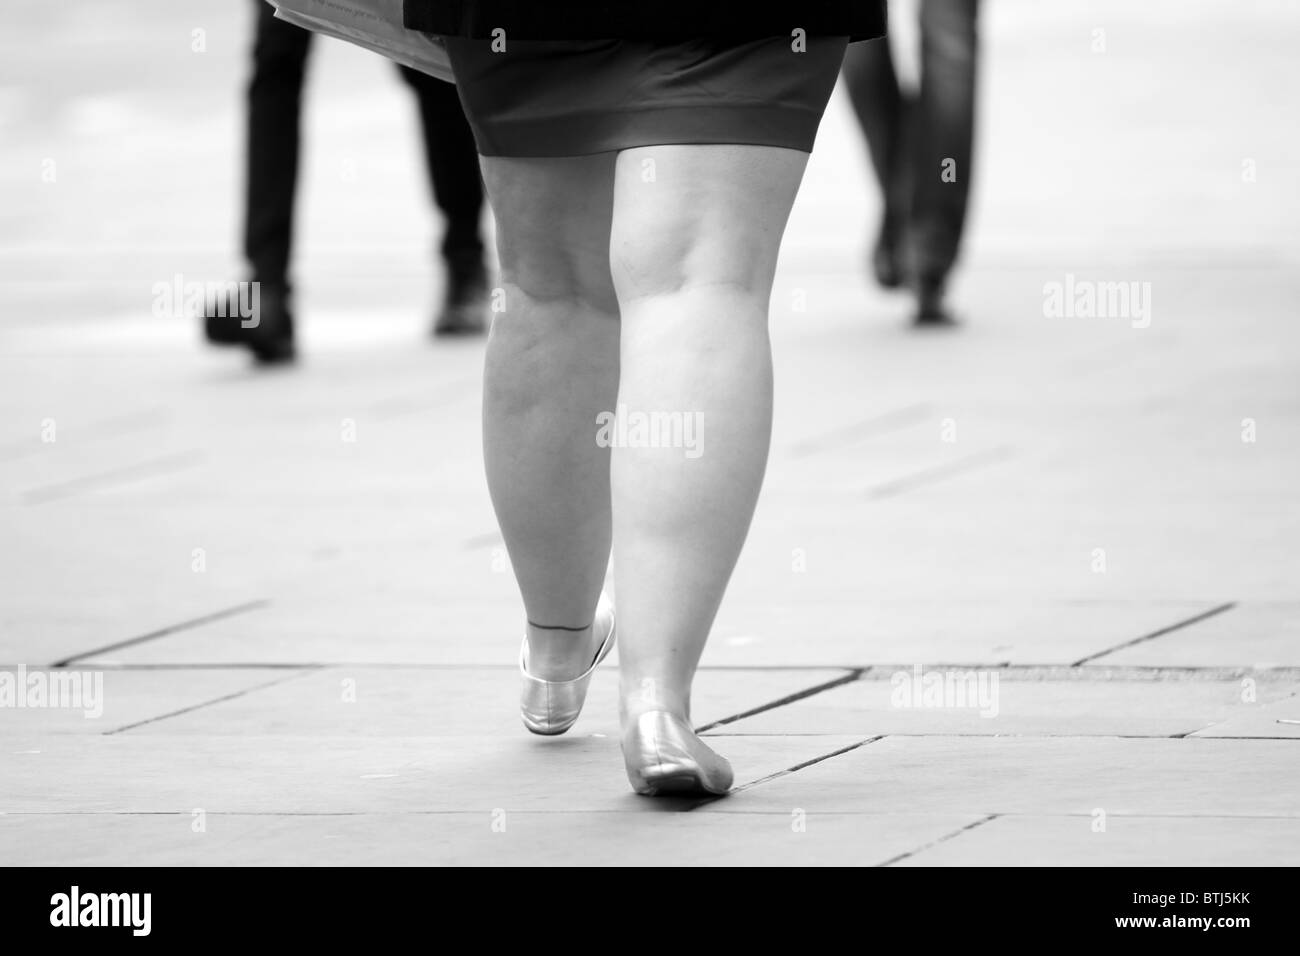 L'heure Noir Blanc Chaussures pieds se déplacer pour se rendre au travail en retard au travail rat race London life style de vêtements Manteaux Ville Banque D'Images